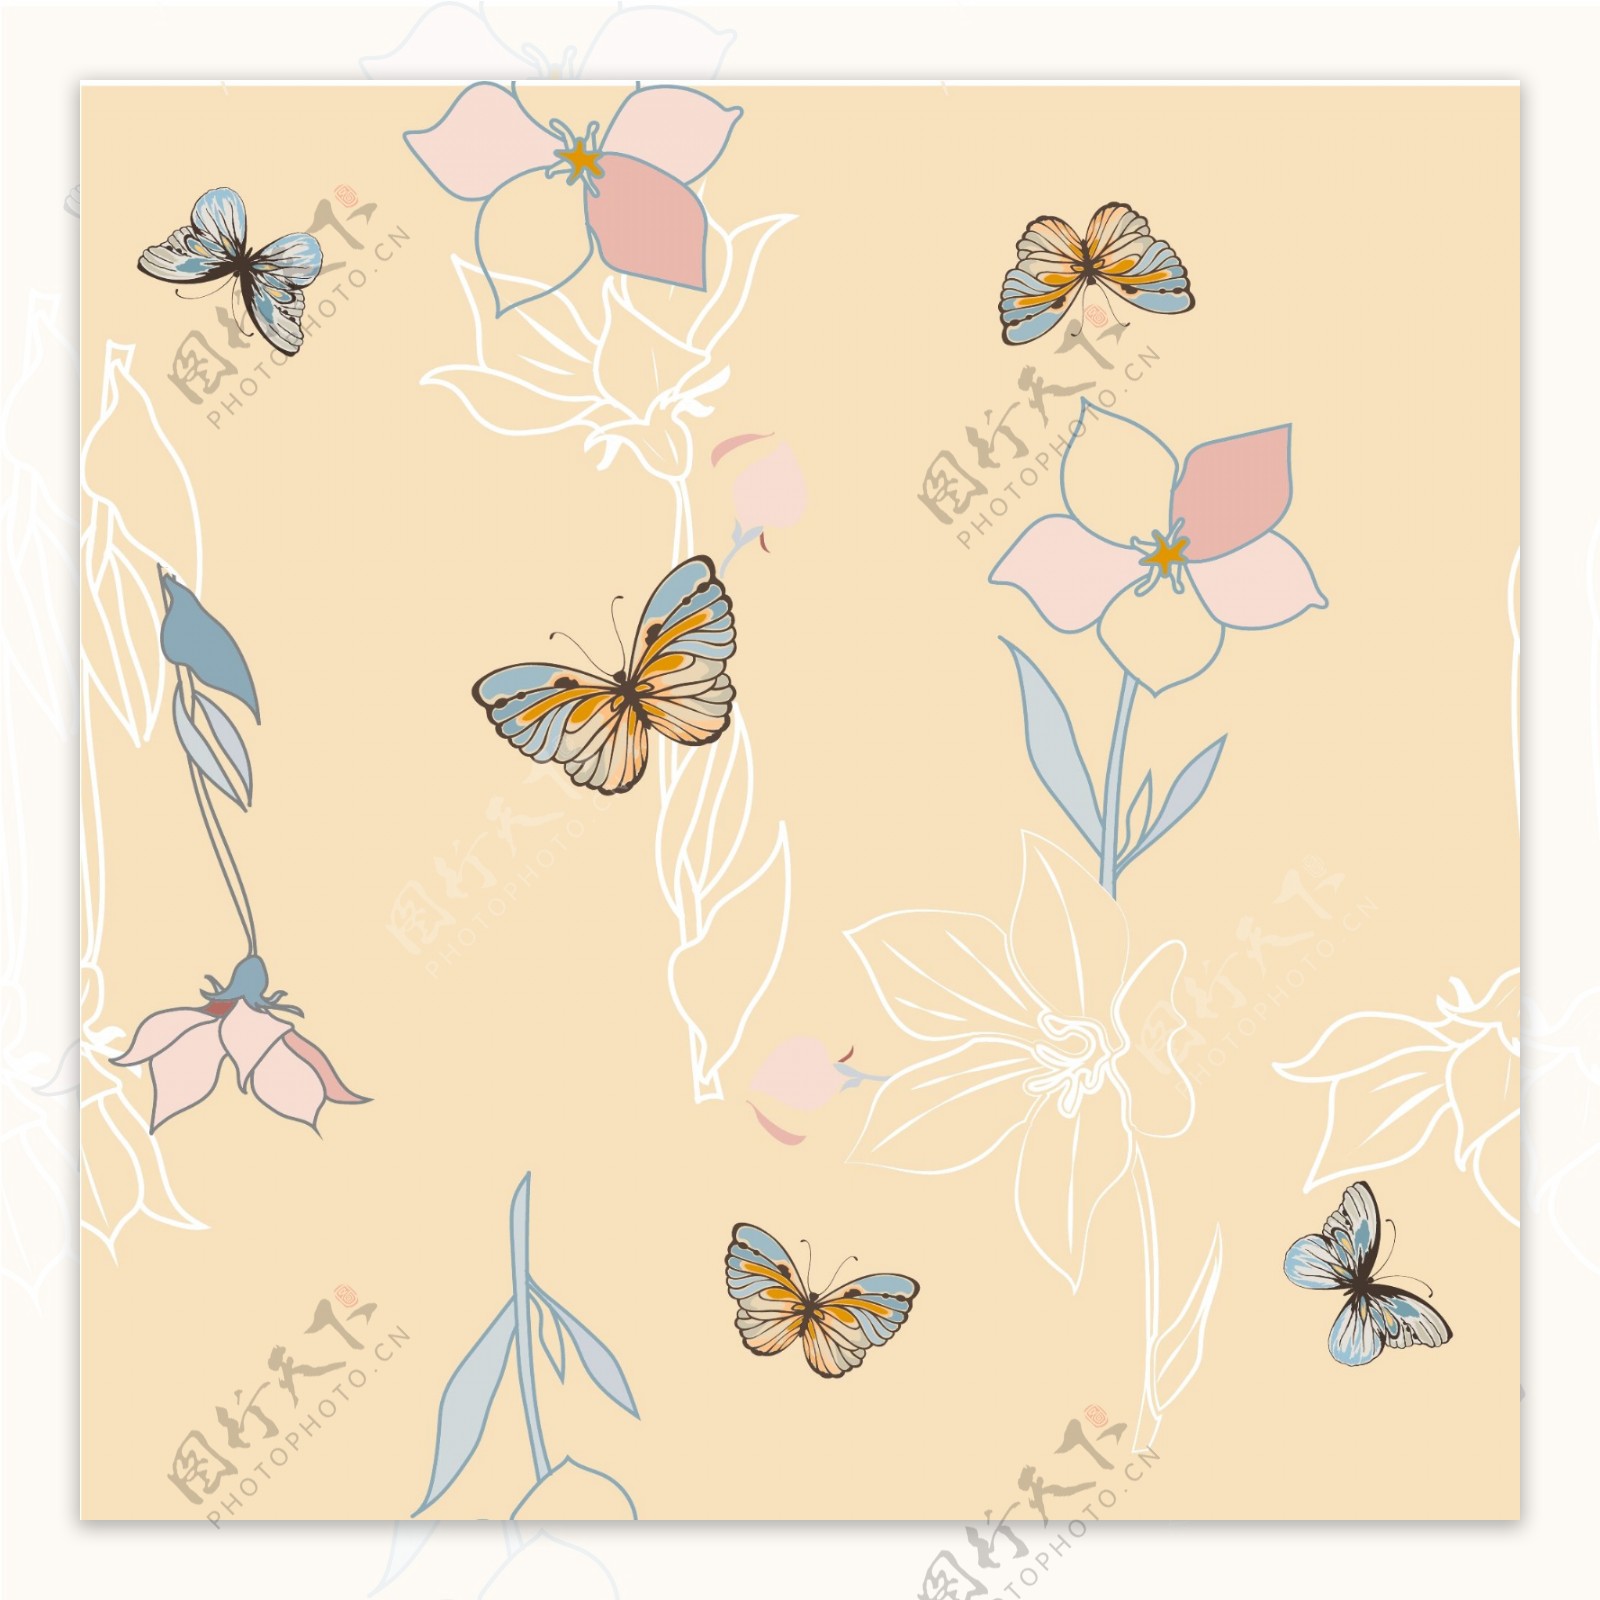 蝴蝶花朵图案